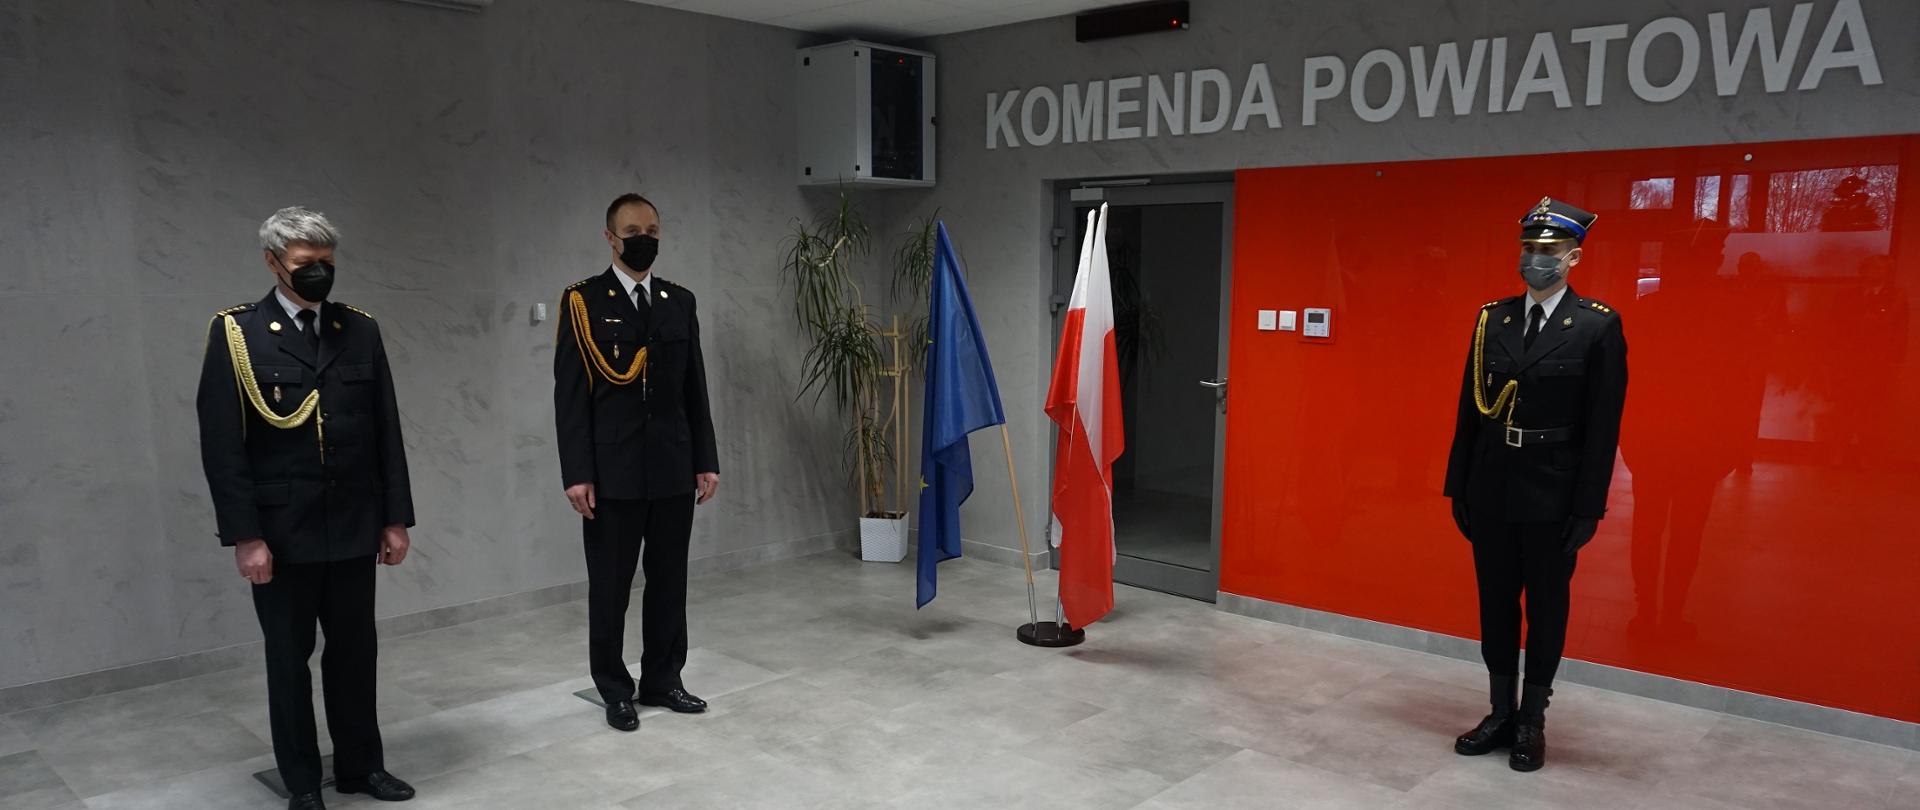 Zmiana na stanowisku Komendanta Powiatowego PSP w Węgrowie